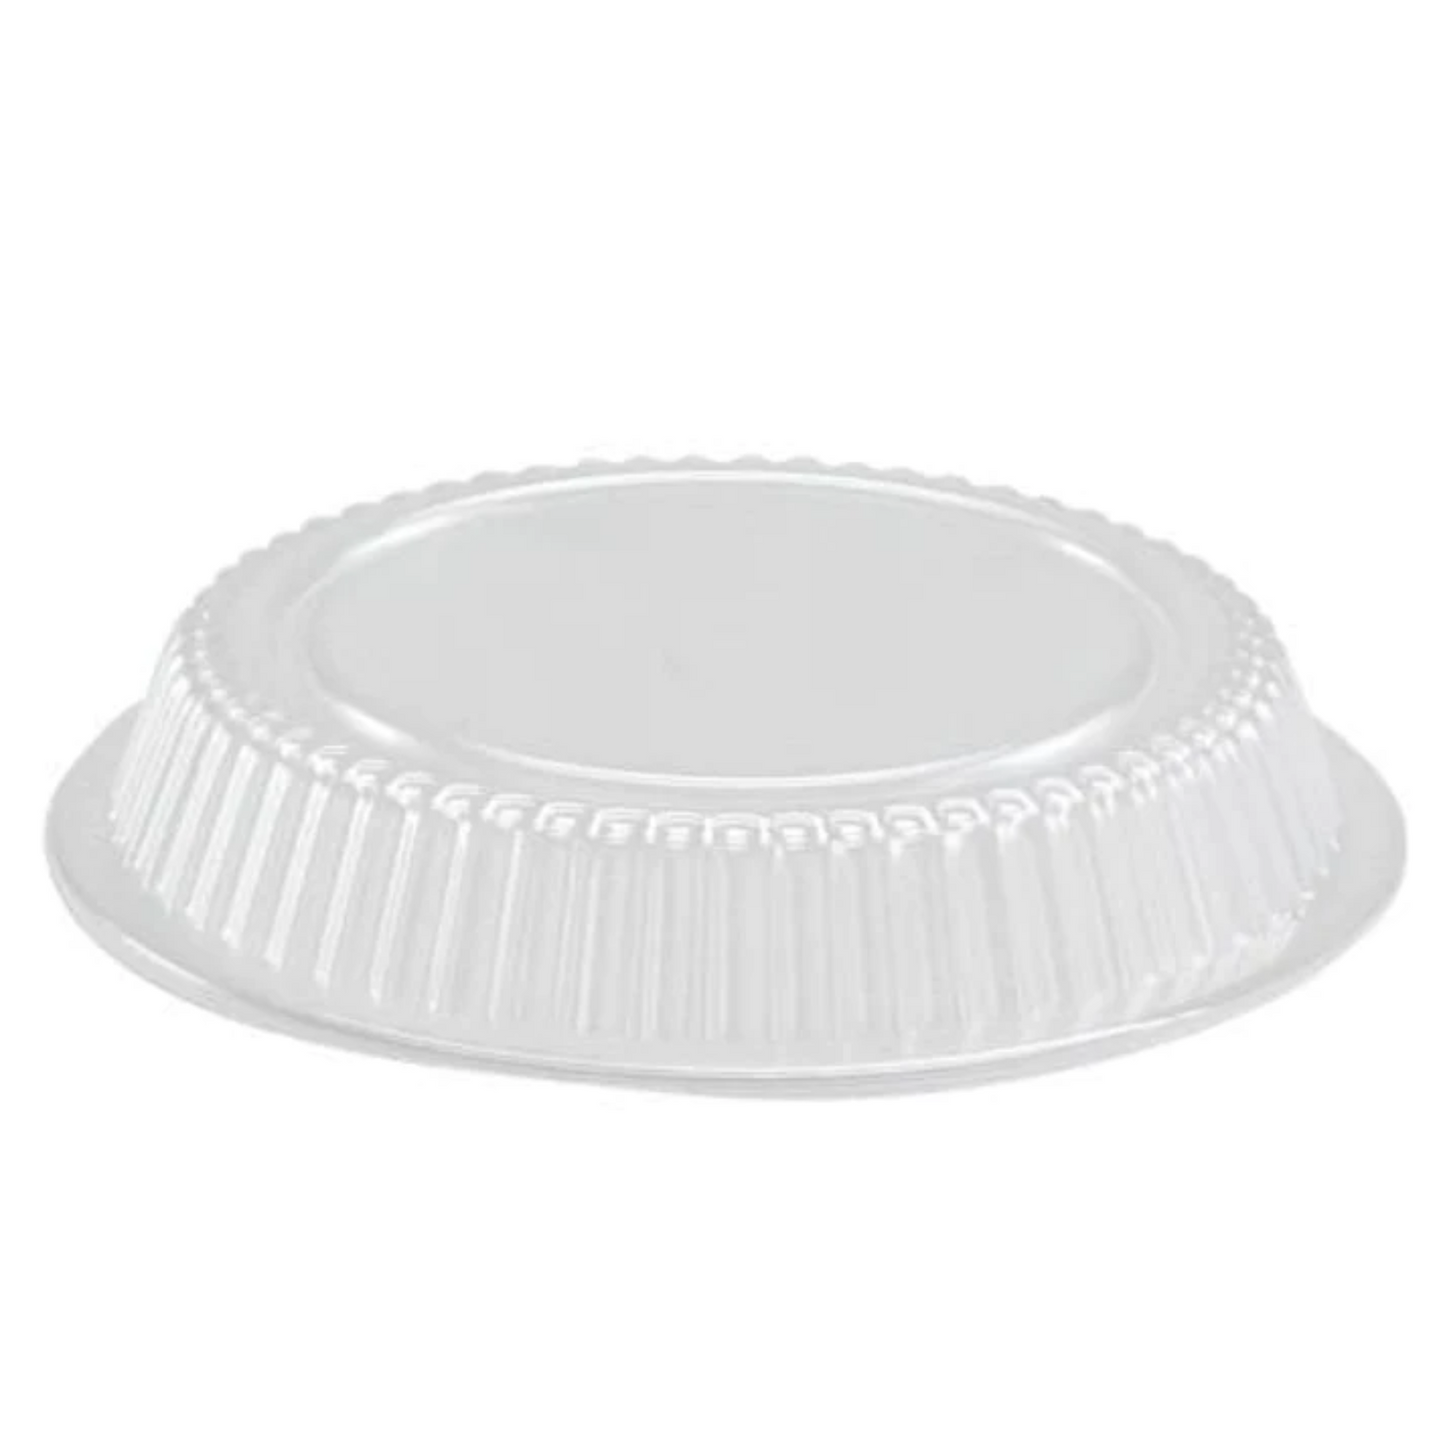 *WHOLESALE* 9" Dome Lids for Disposable Aluminum Round Pan | 500 ct/case Disposable JetFoil   